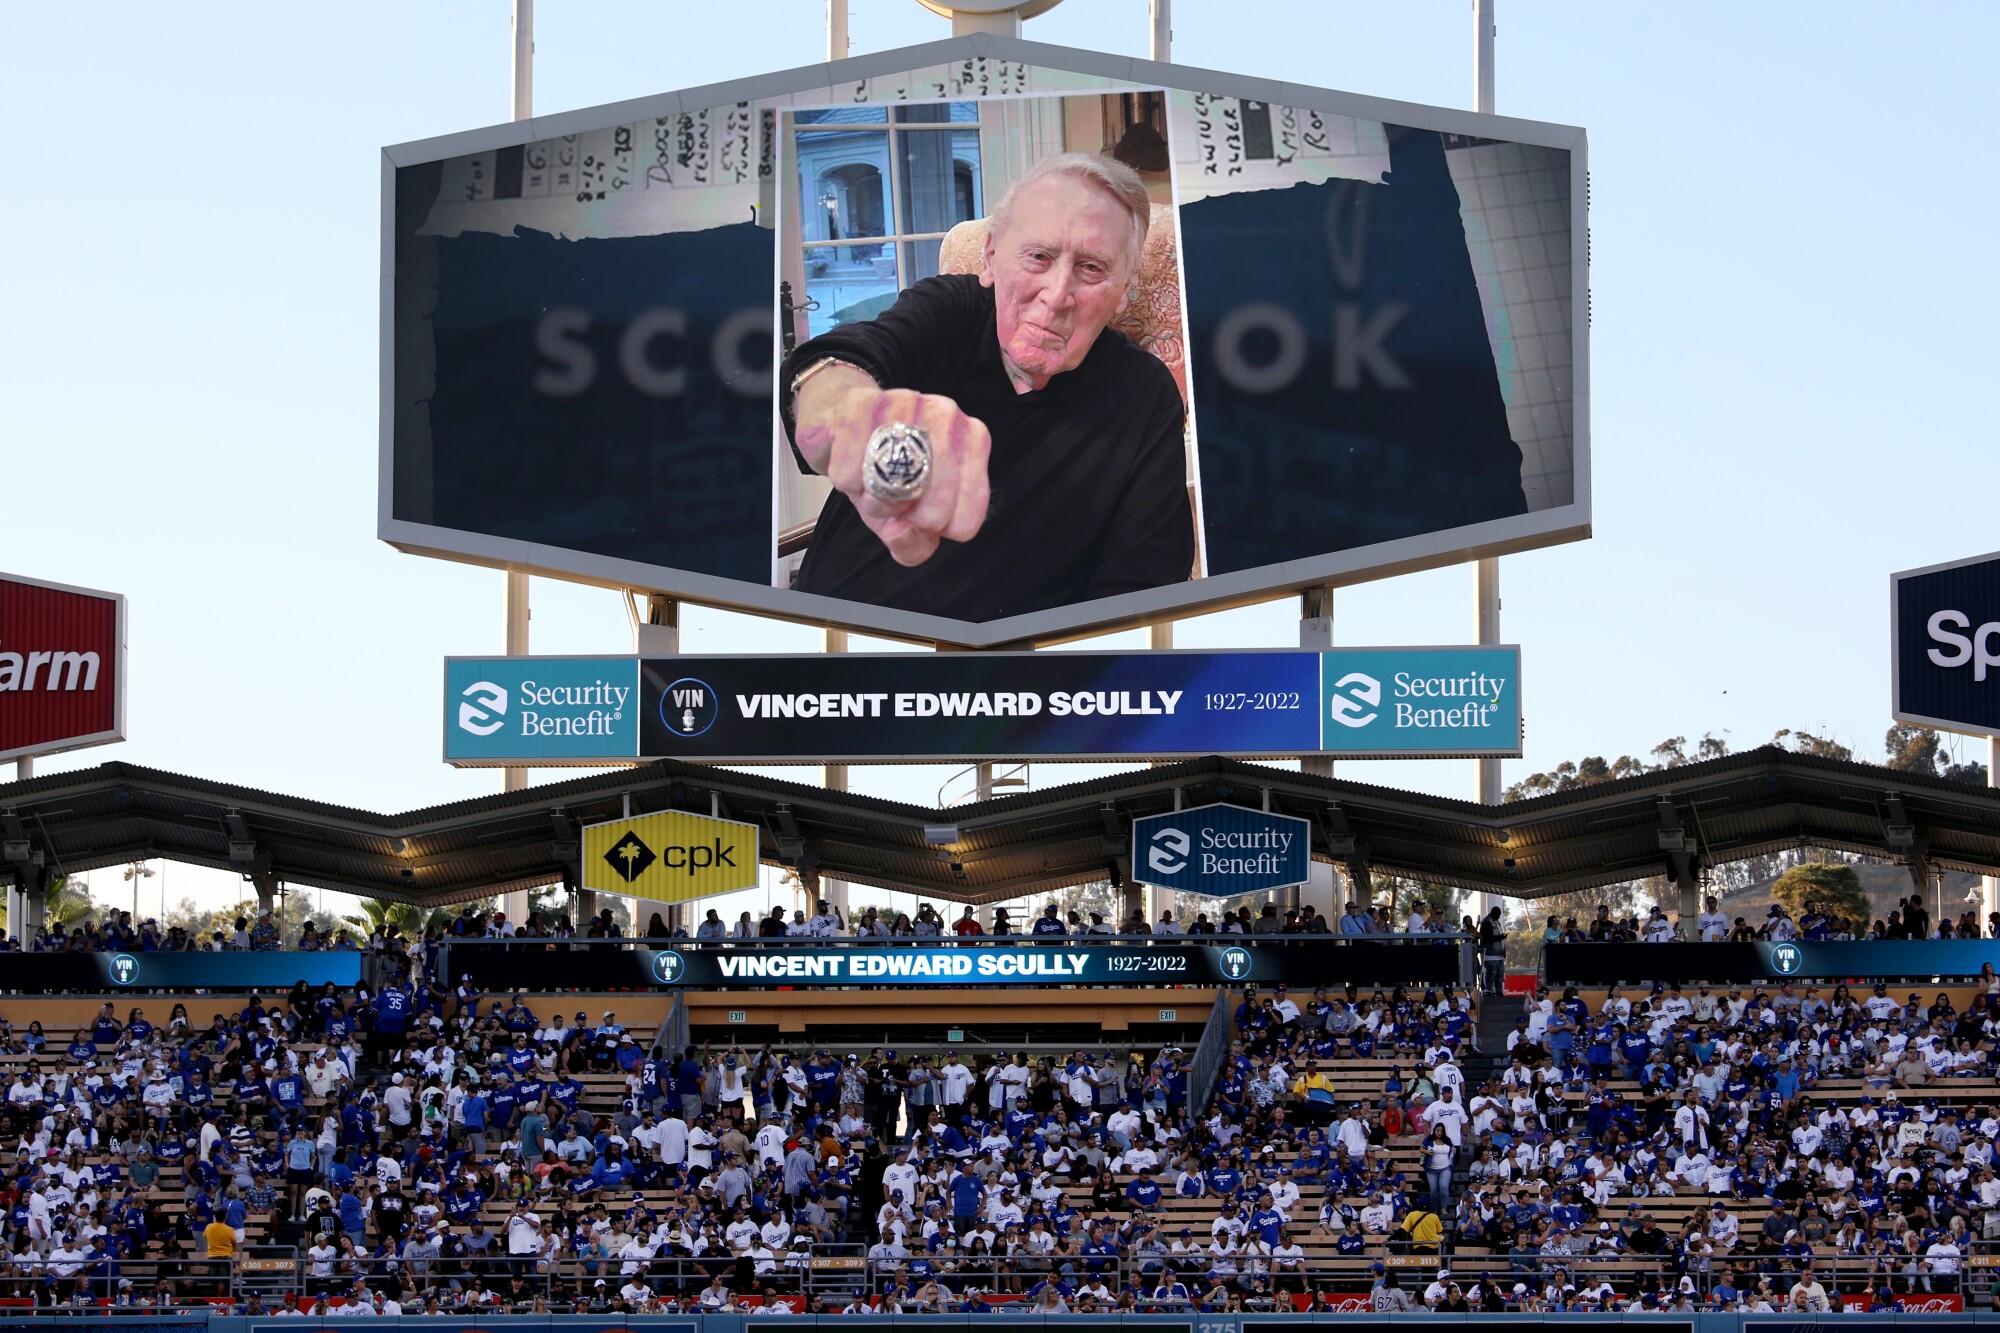 शुक्रवार के प्रीगेम समारोह के दौरान डोजर स्टेडियम में बड़े पर्दे पर विन स्कली की एक तस्वीर प्रदर्शित की गई है।